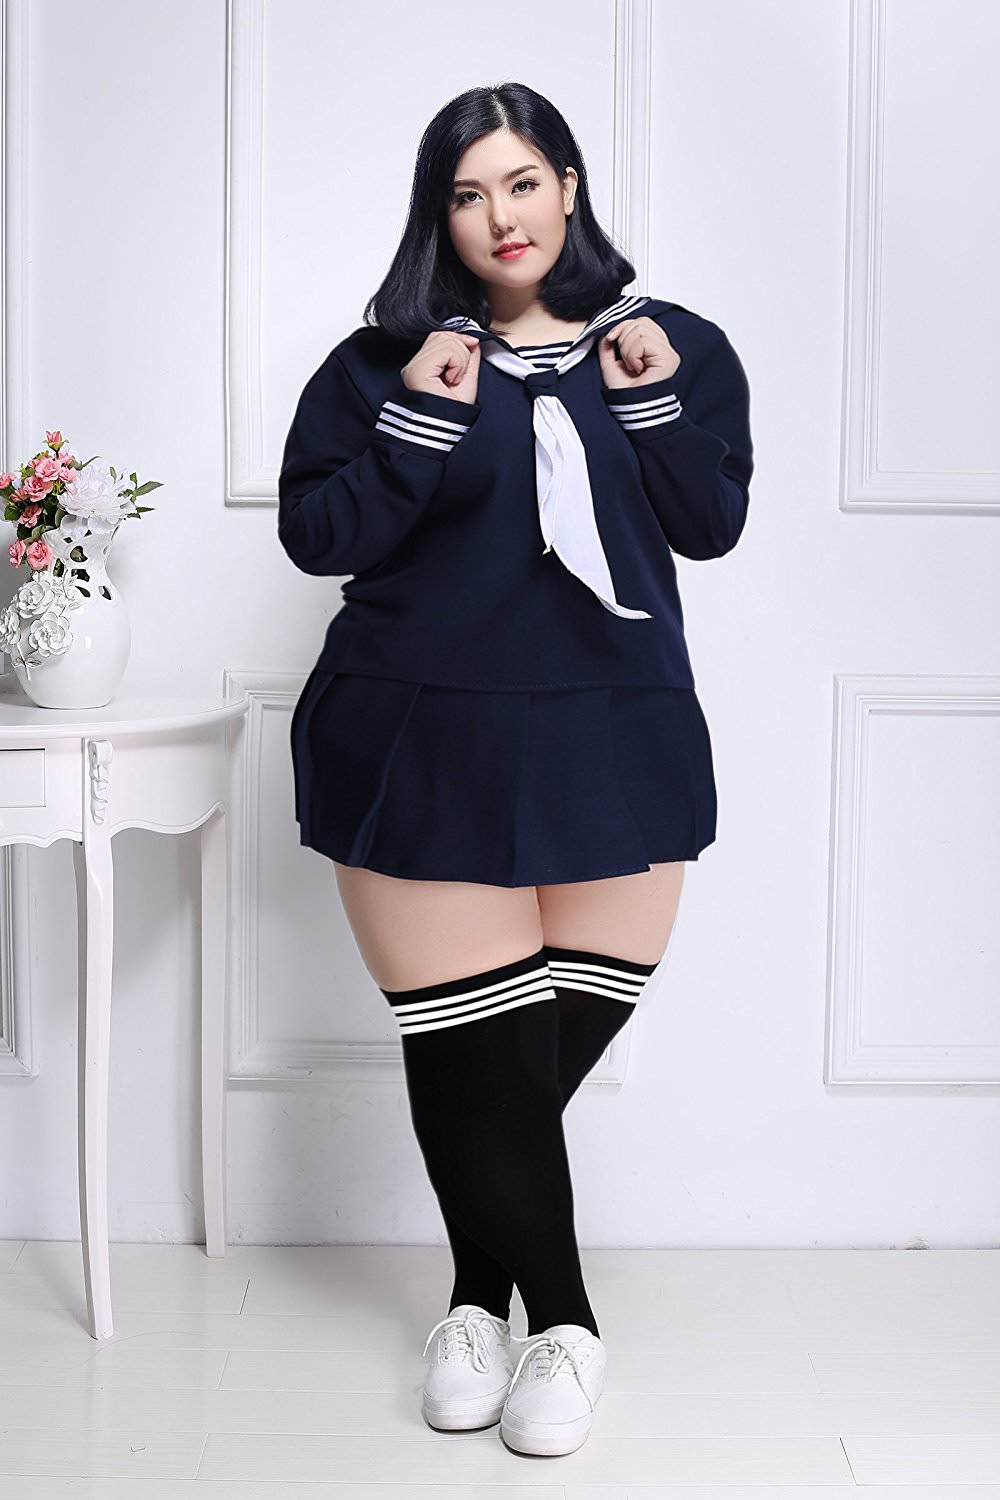 Fat schoolgirl